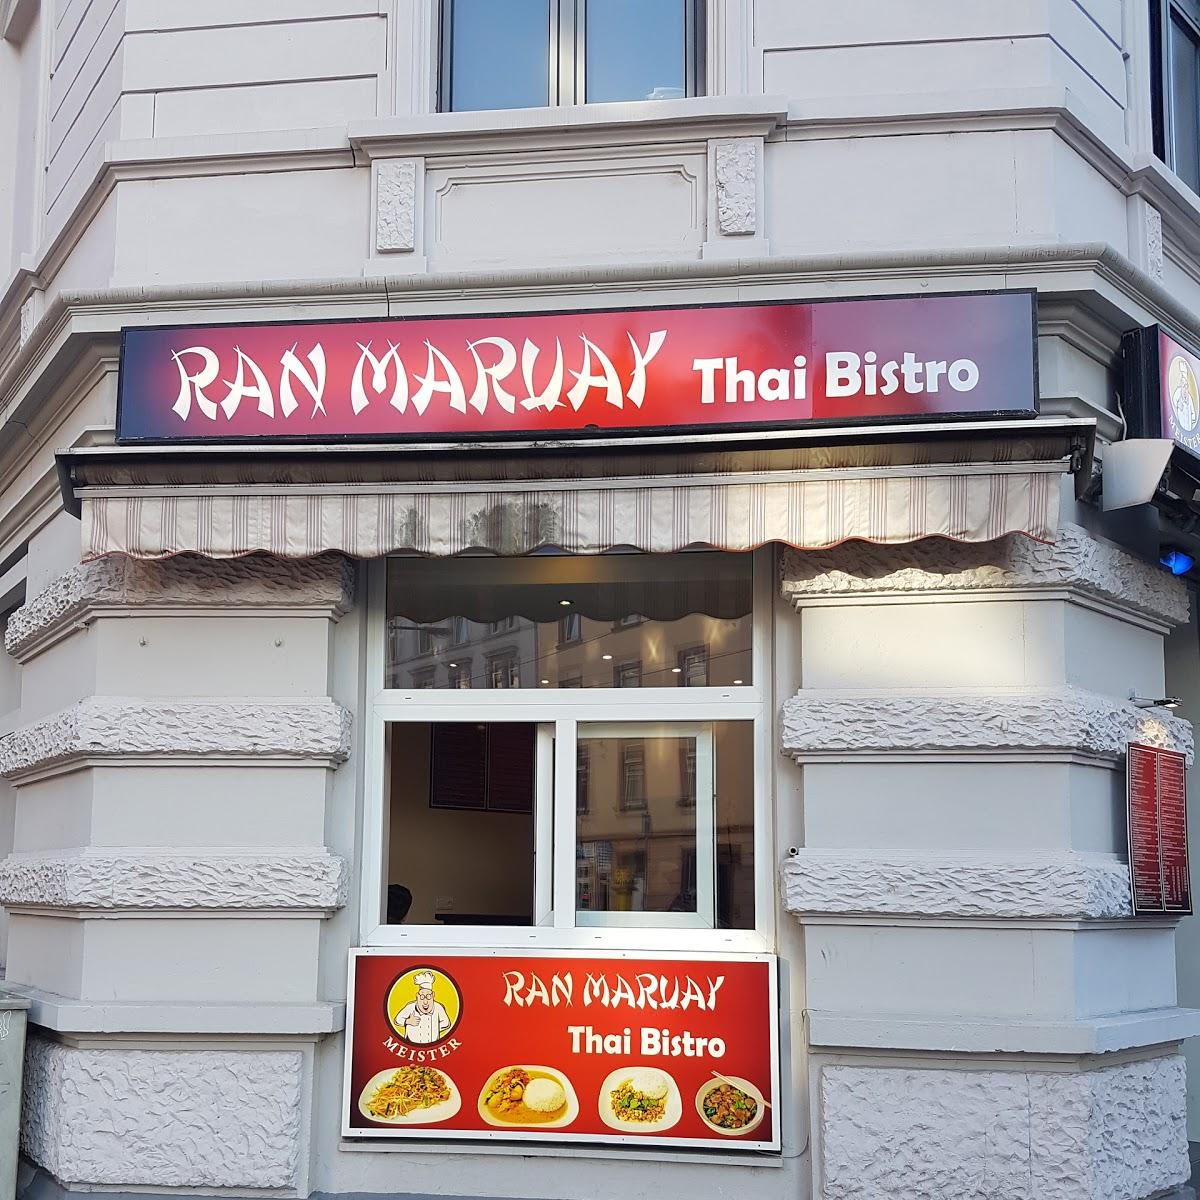 Restaurant "Ran Maruay Thai Bistro" in Frankfurt am Main